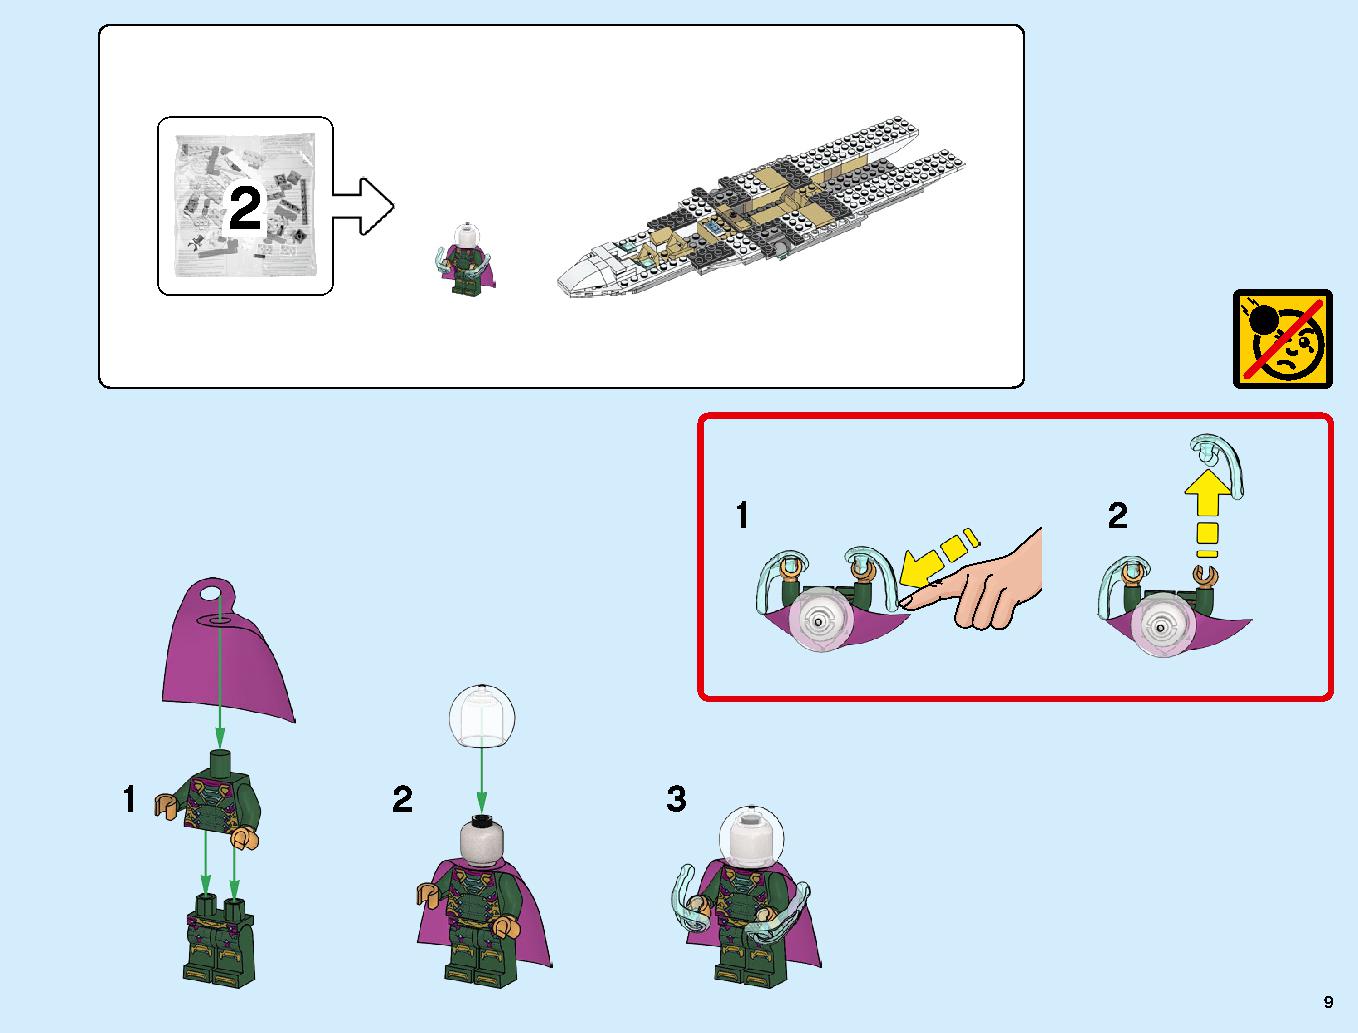 スタークジェットとドローン攻撃 76130 レゴの商品情報 レゴの説明書・組立方法 9 page